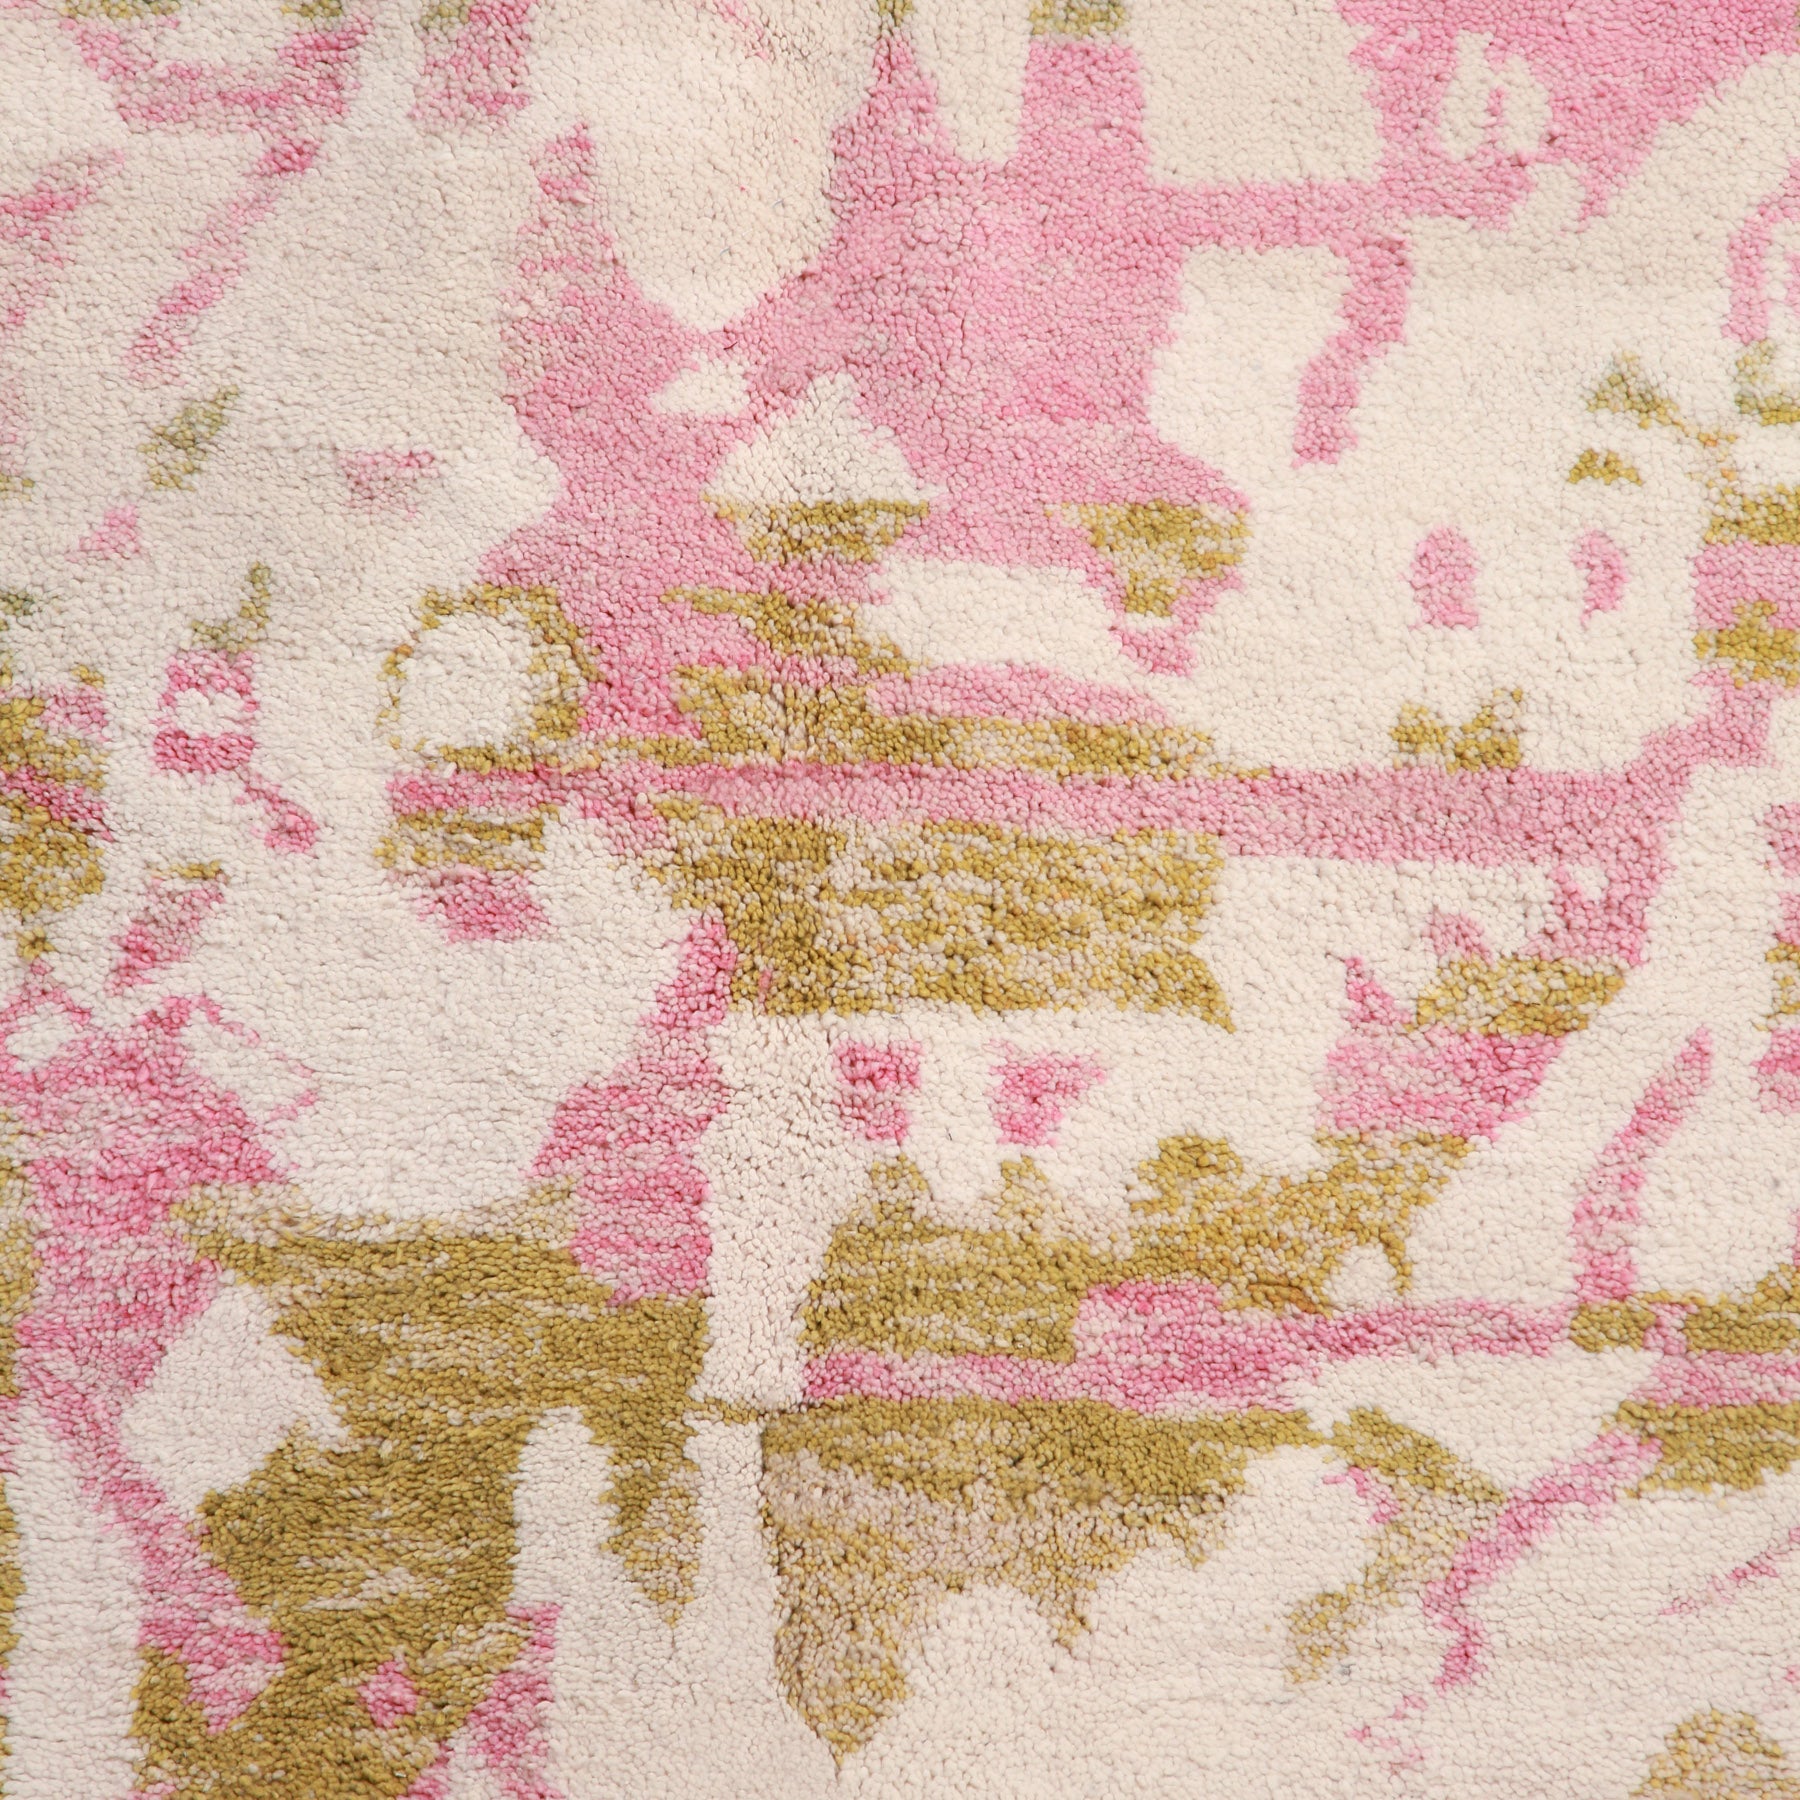 dettaglio dei disegni astratti rosa e verde pastello di un tappeto artigianale marocchino beni ourain